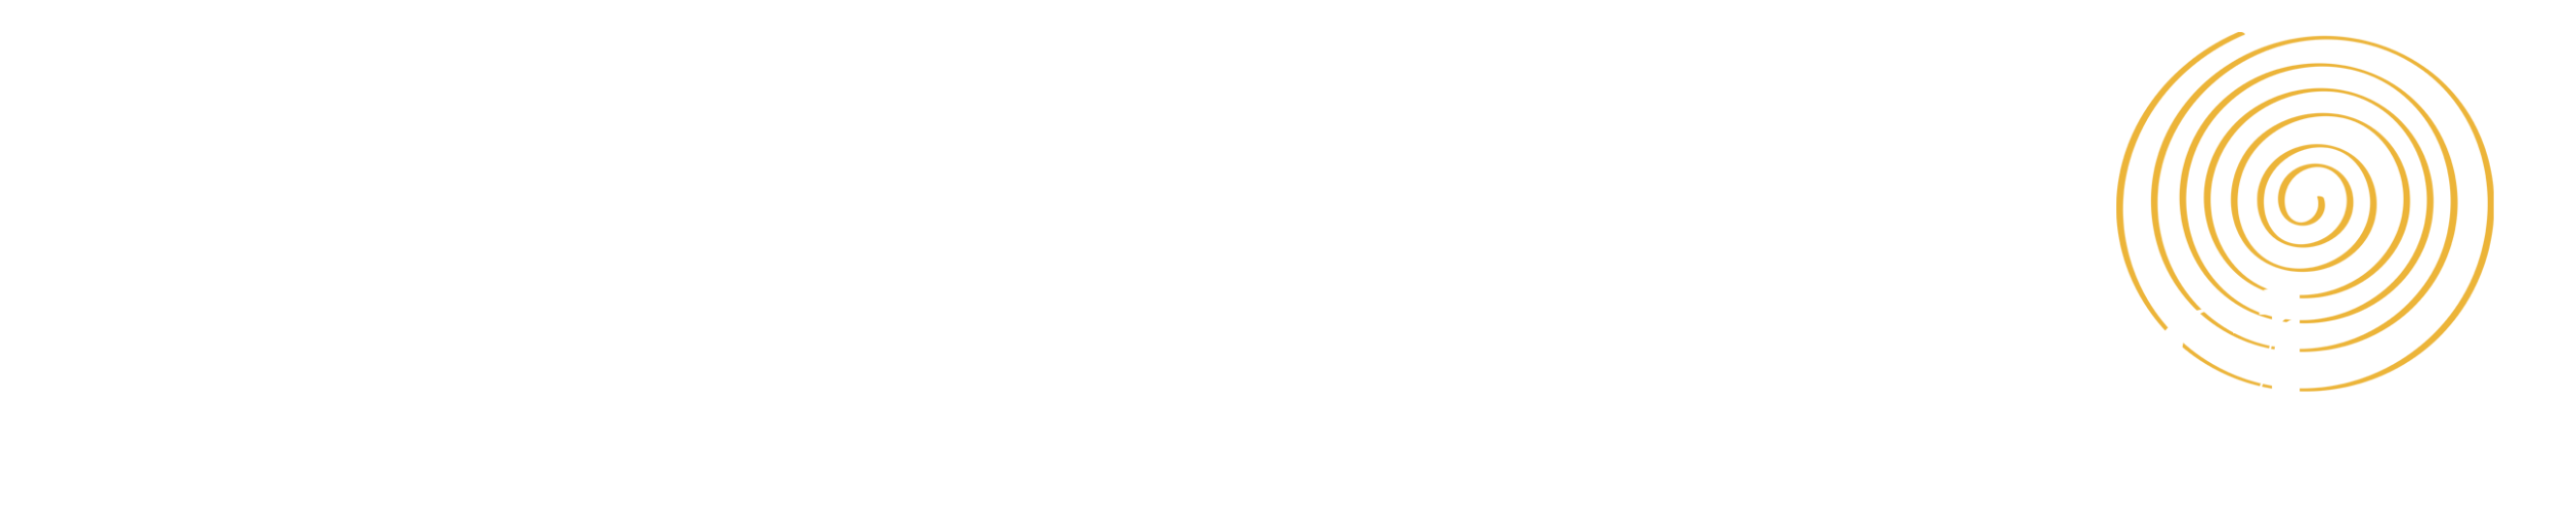 Colorado Lotus Project banner image